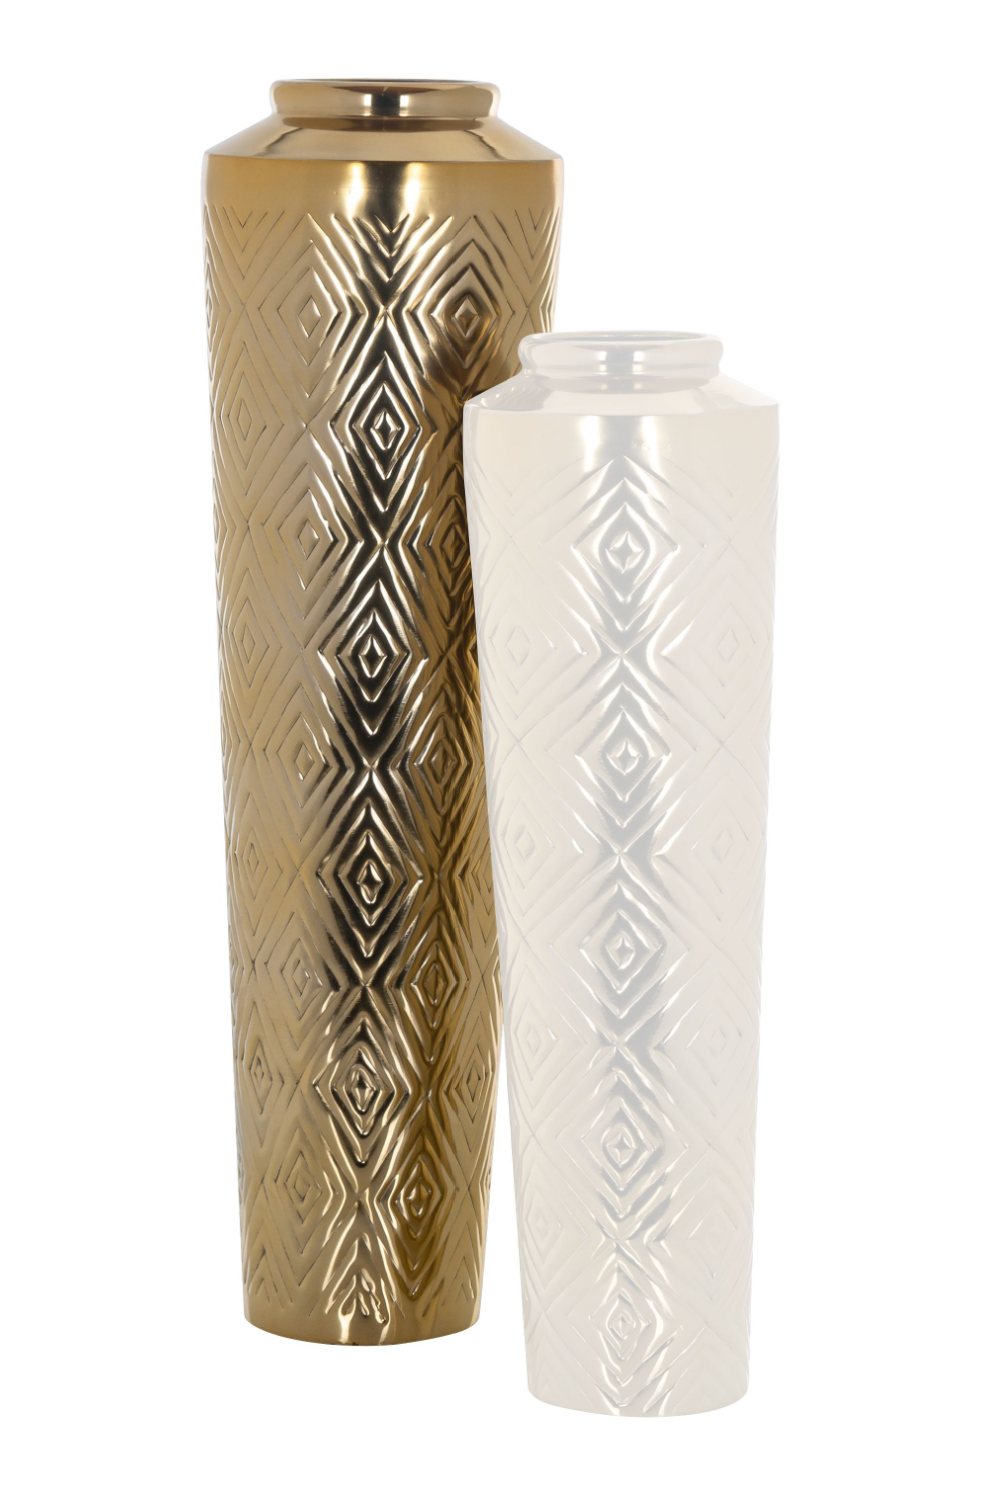 Gold Carved Vase | OROA Dana | Oroa.com